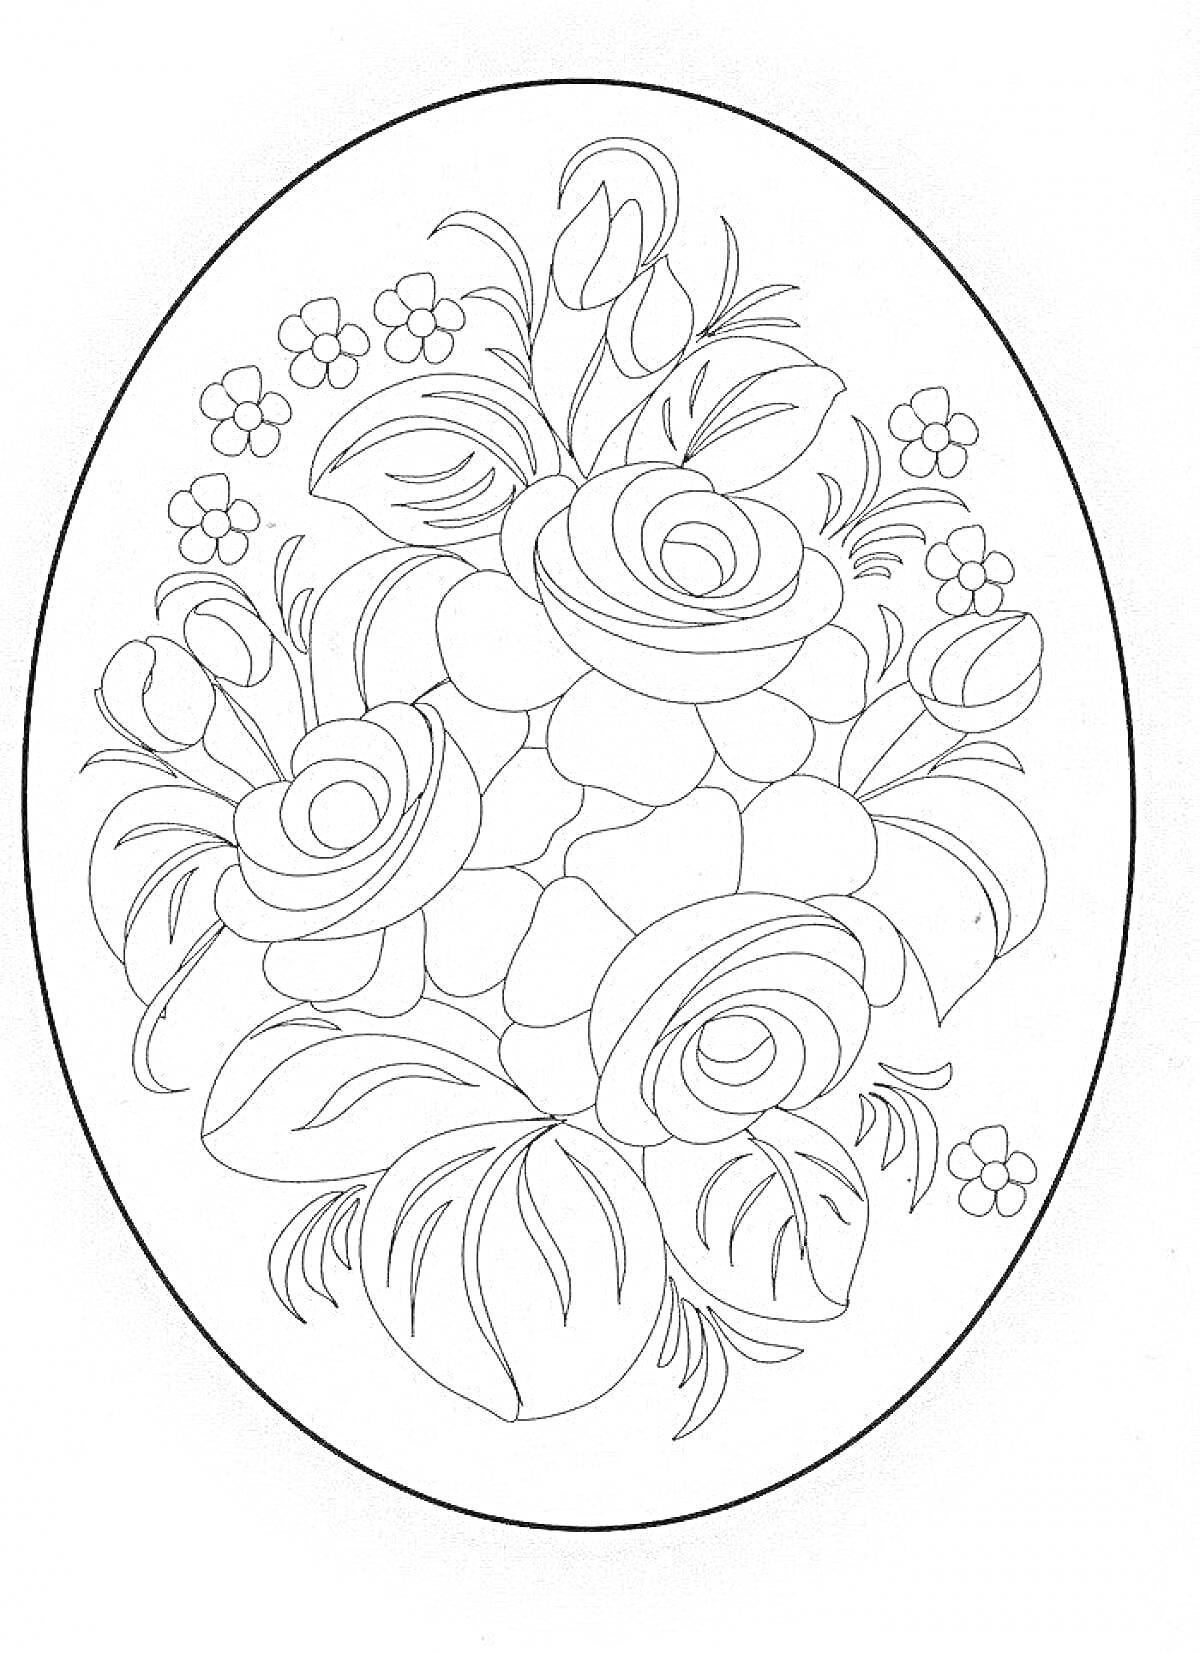 Раскраска Цветочная композиция в стиле жостово с розами, бутонами, листьями и мелкими цветами